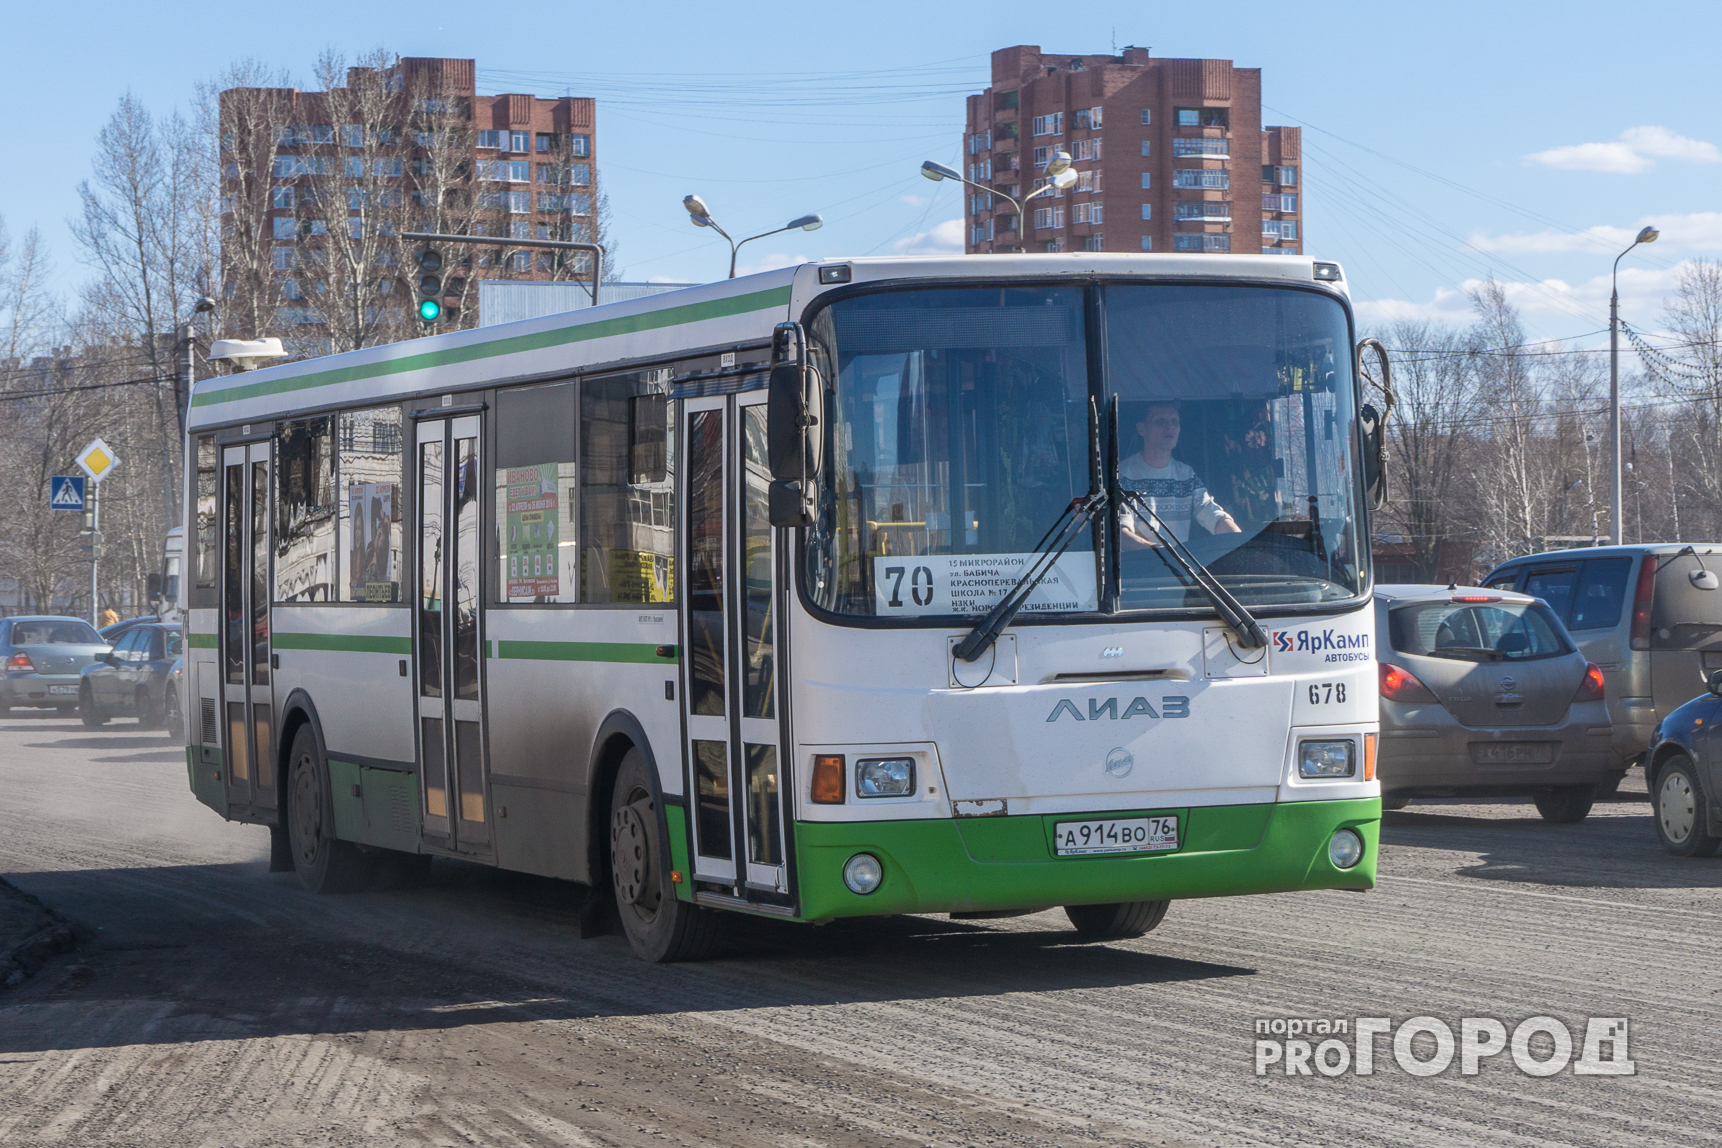 В Ярославле автобус перестанет останавливаться в двух пунктах